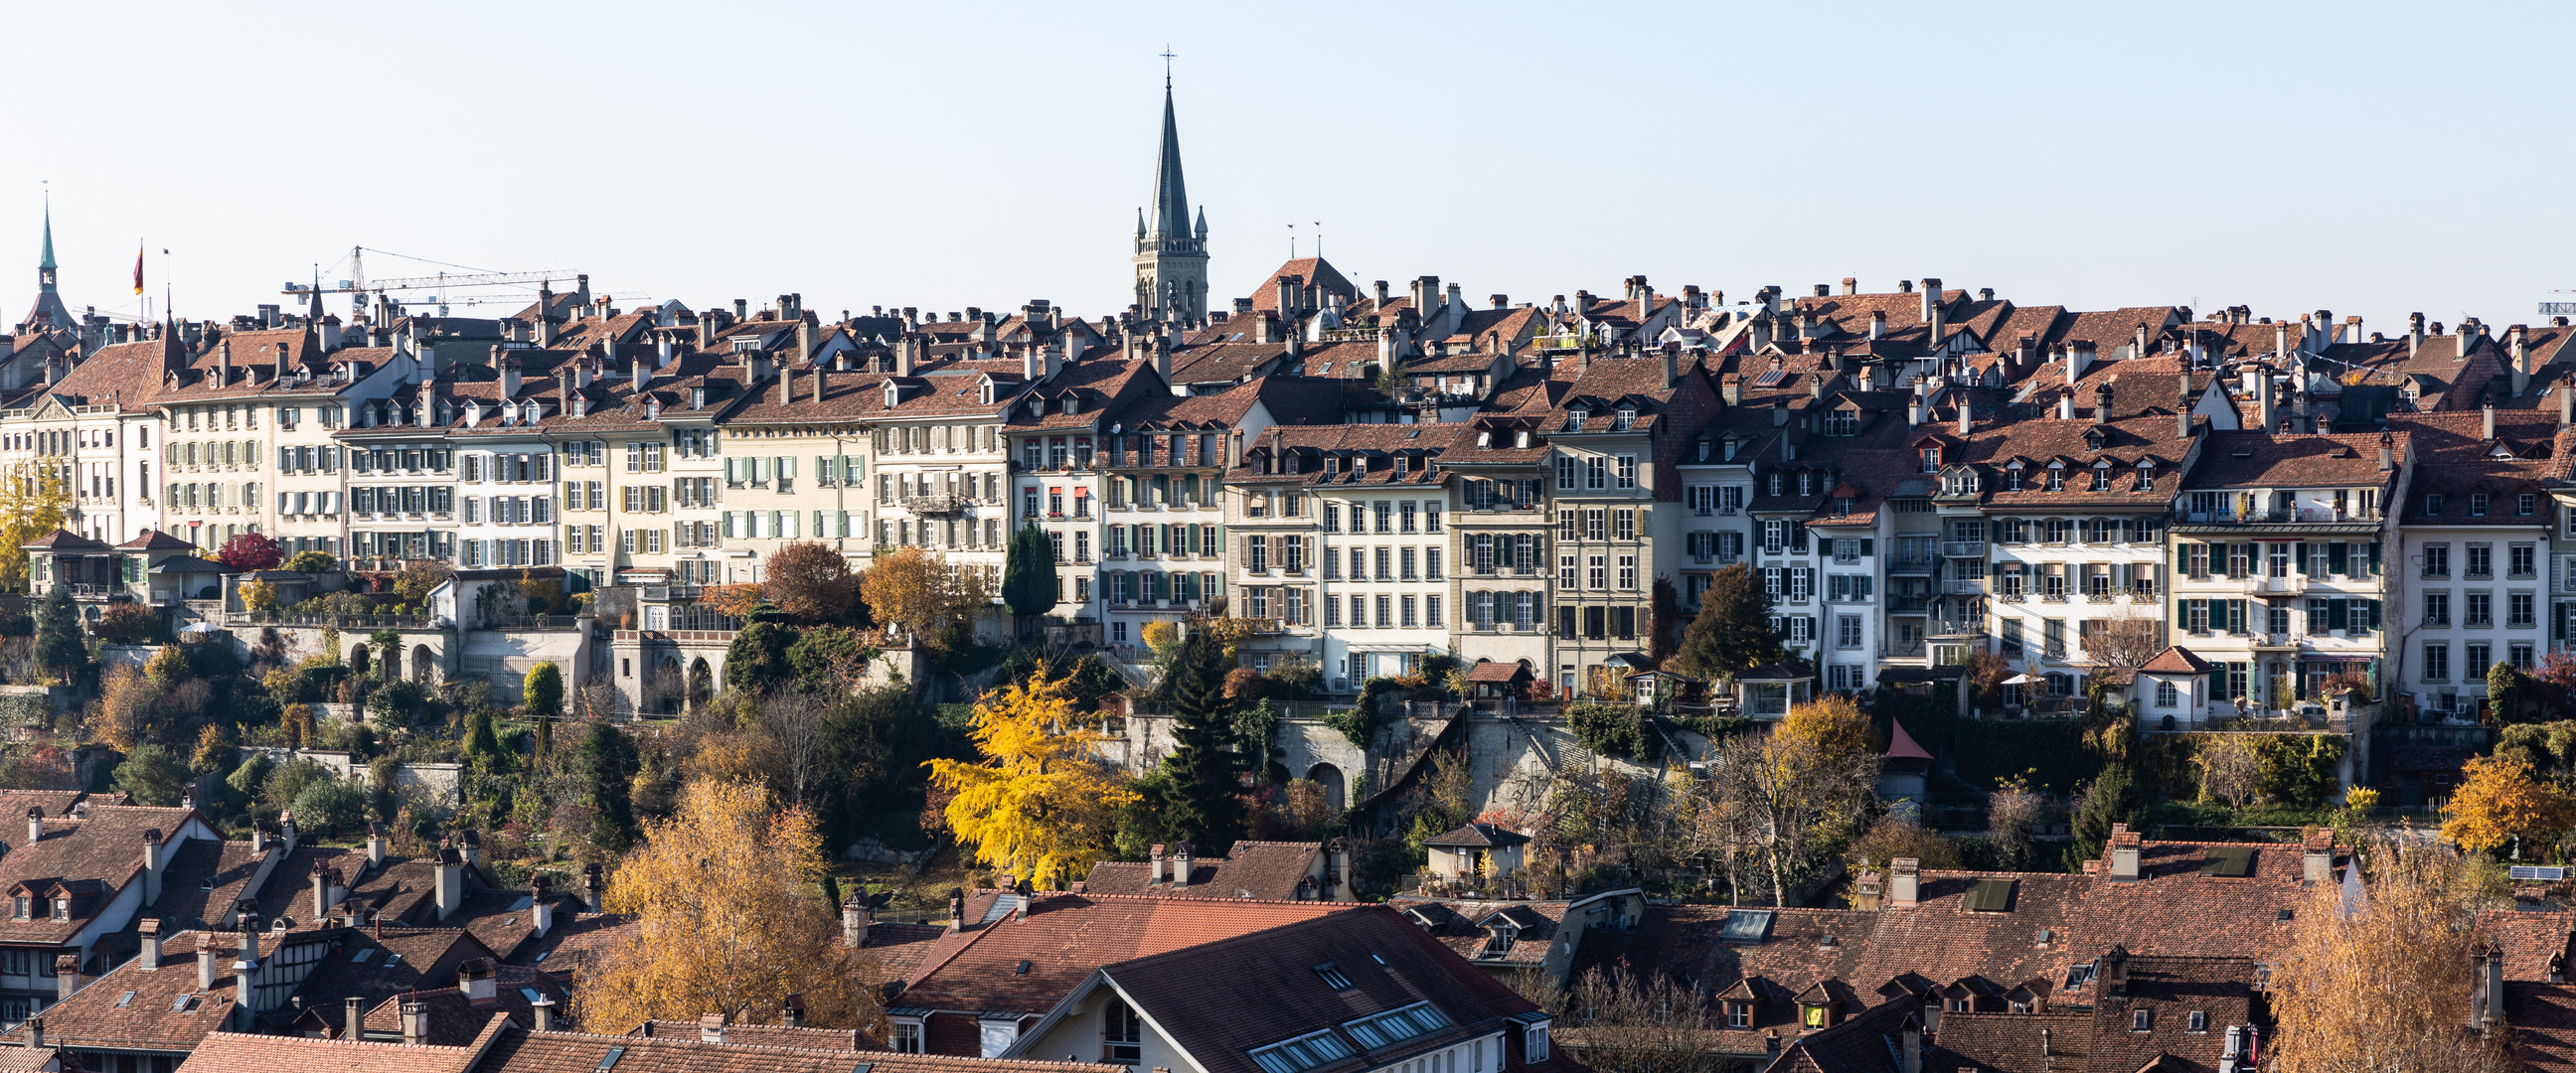 Weltkulturerbe: Altstadt von Bern